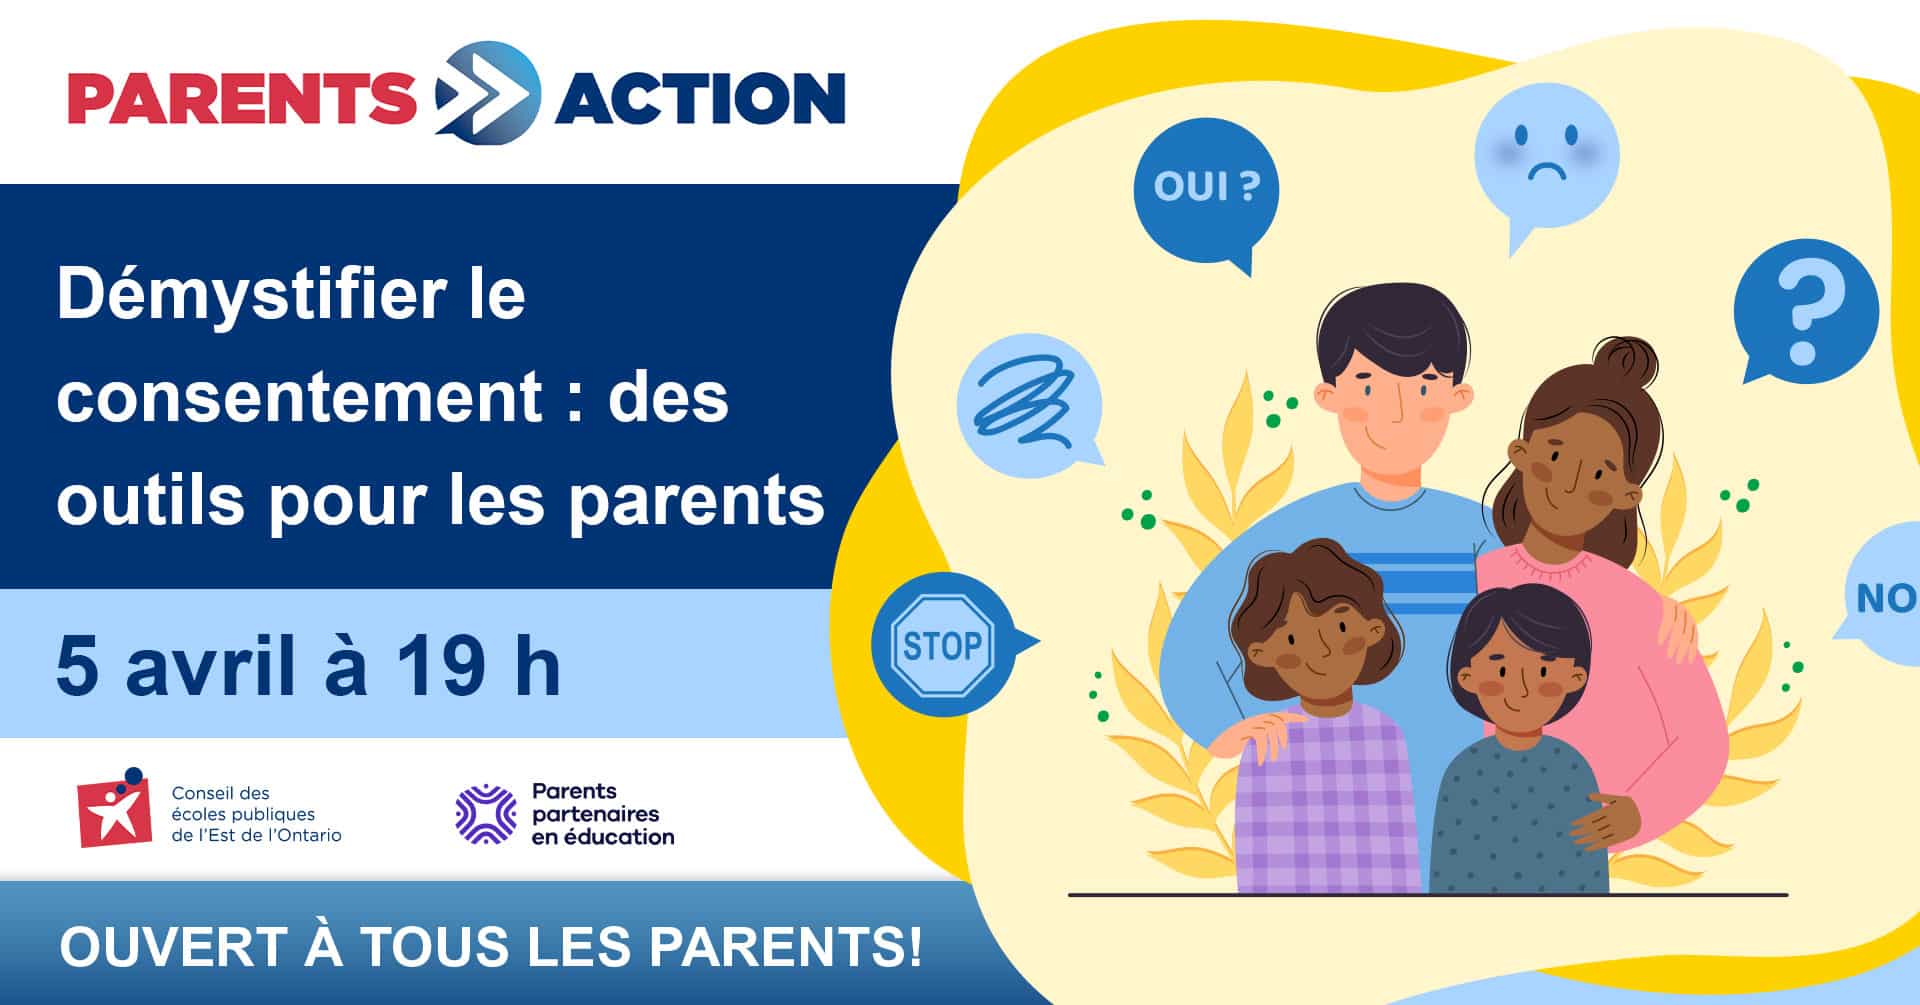 Parents action